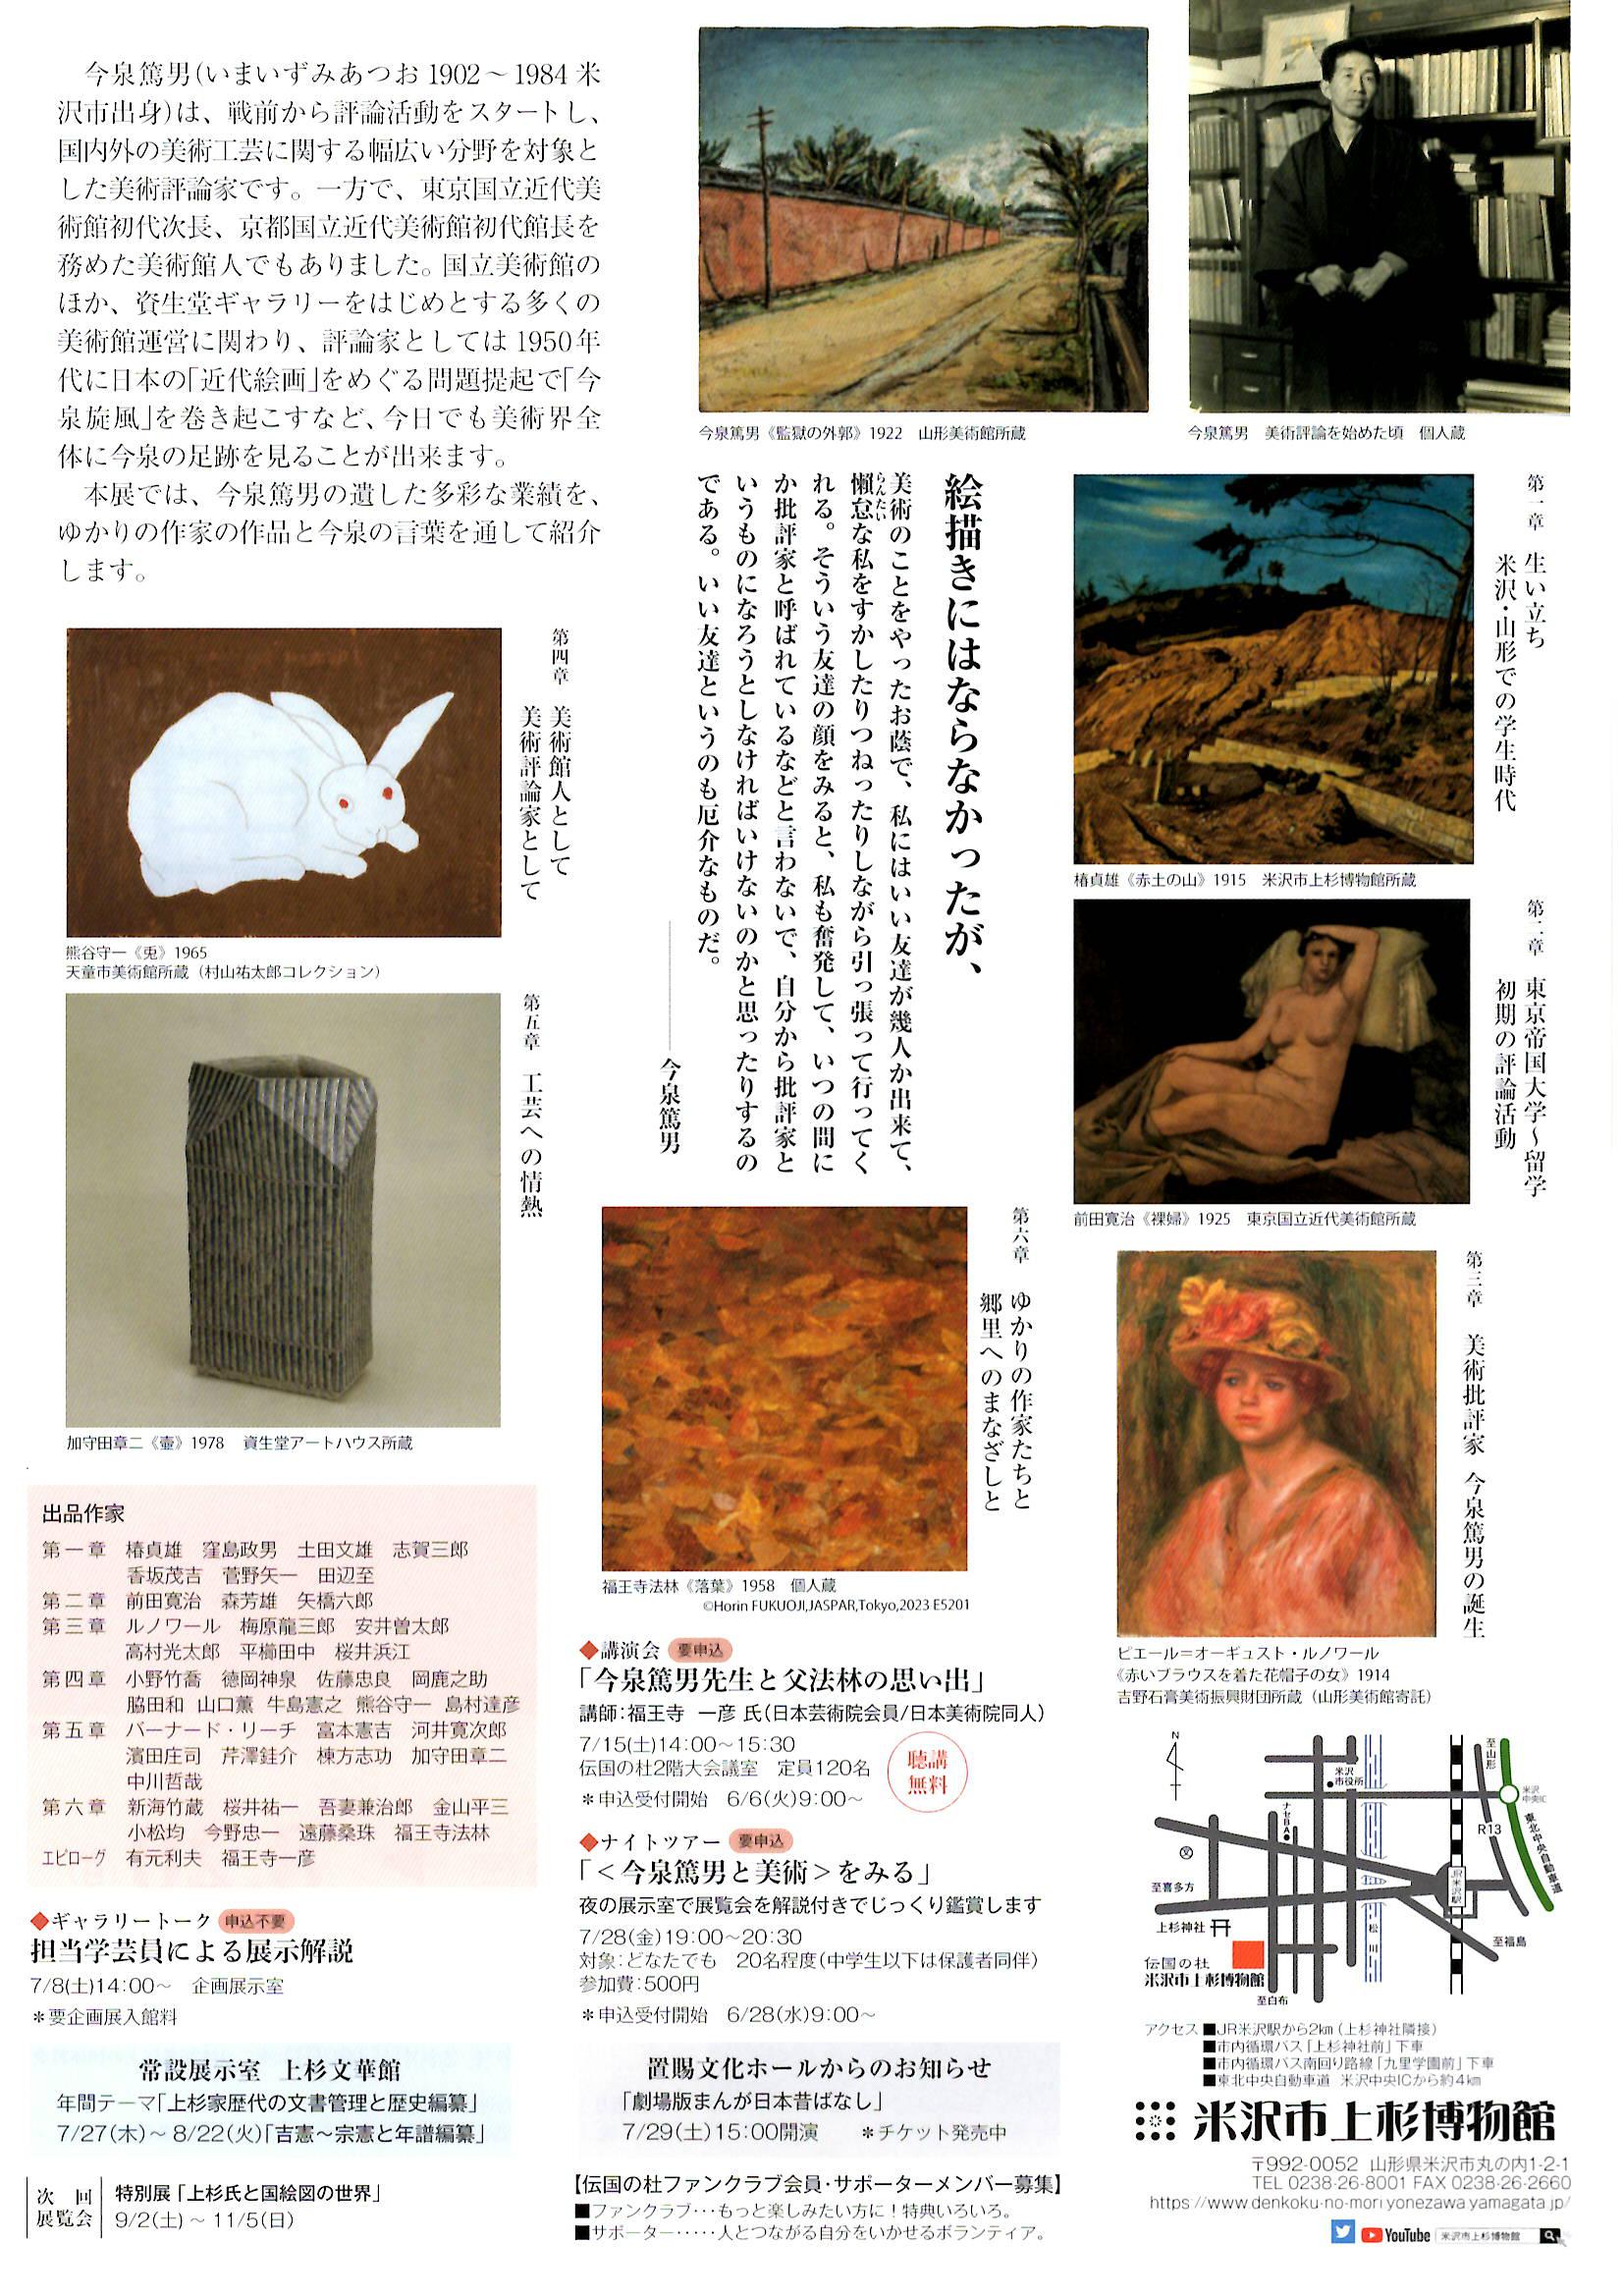 米沢市上杉博物館 企画展「今泉篤男と美術」